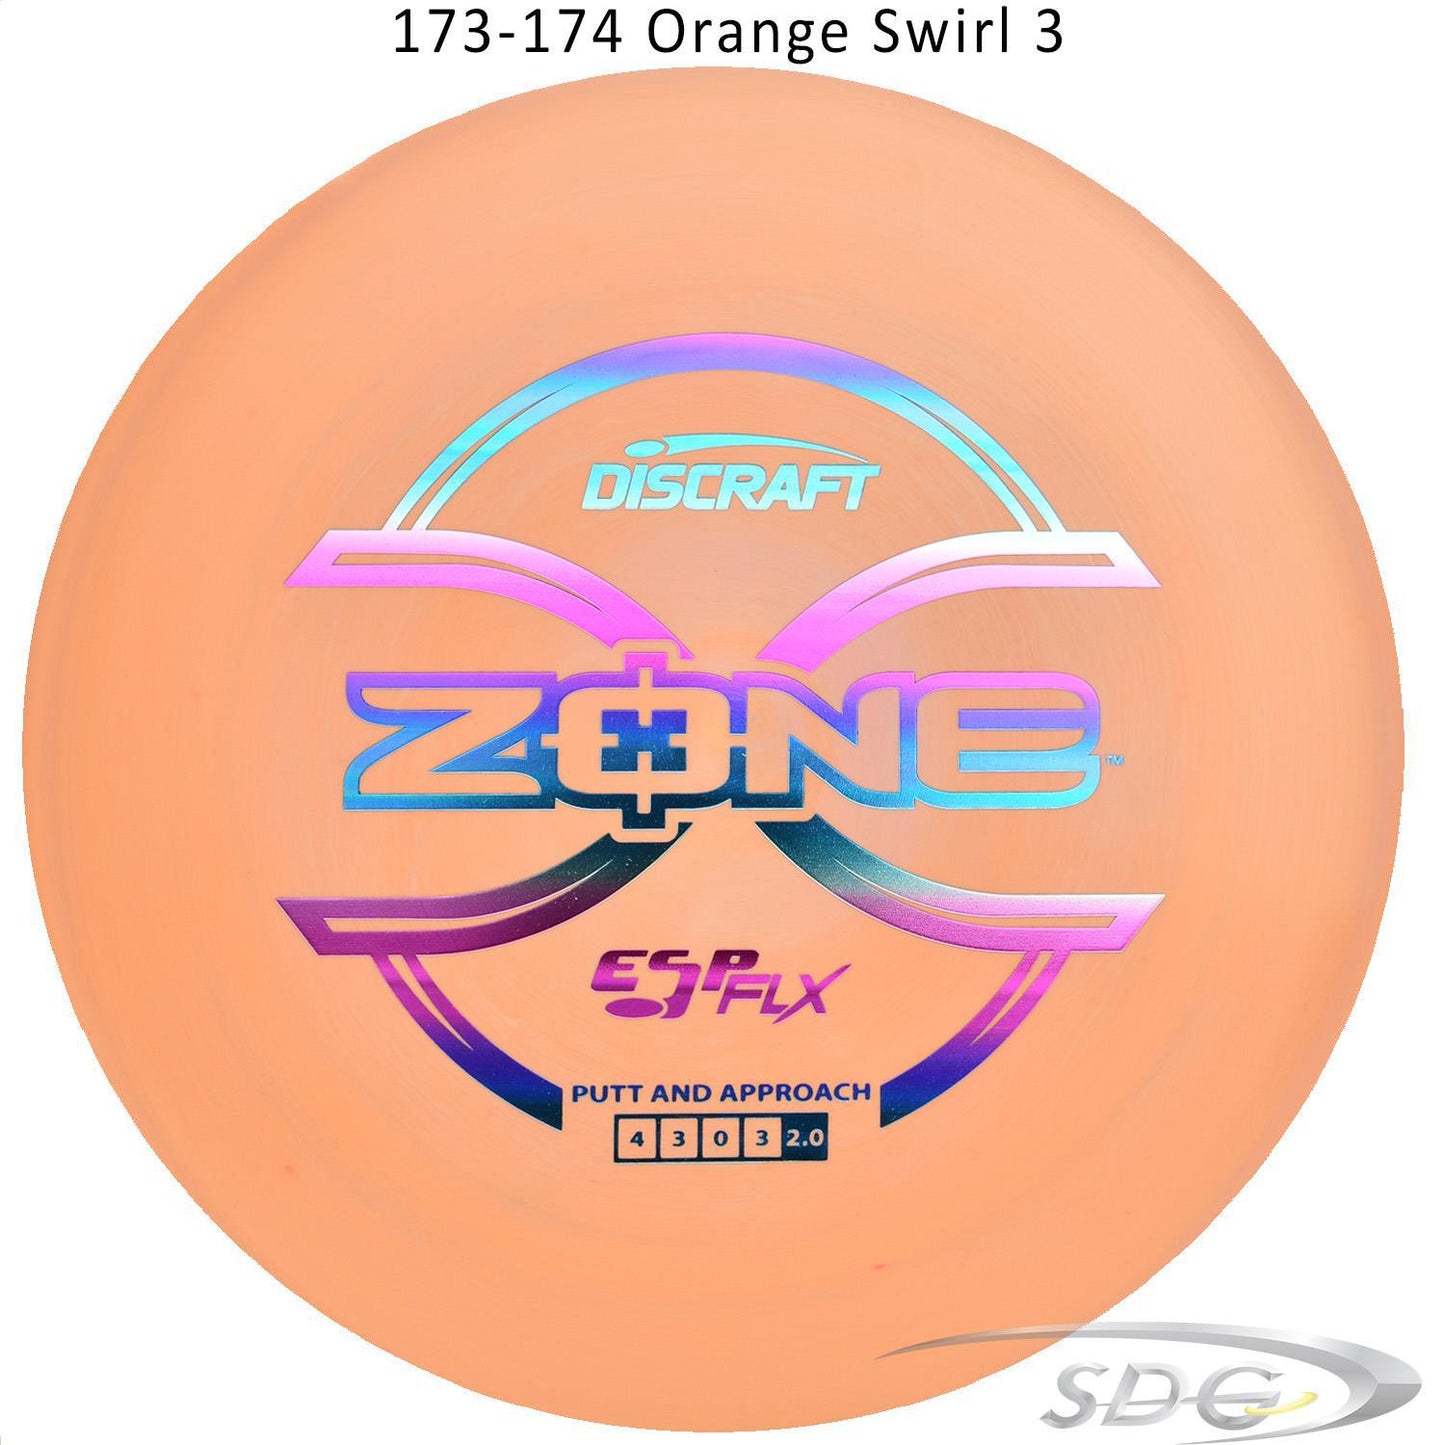 discraft-esp-flx-zone-disc-golf-putter 173-174 Orange Swirl 3 